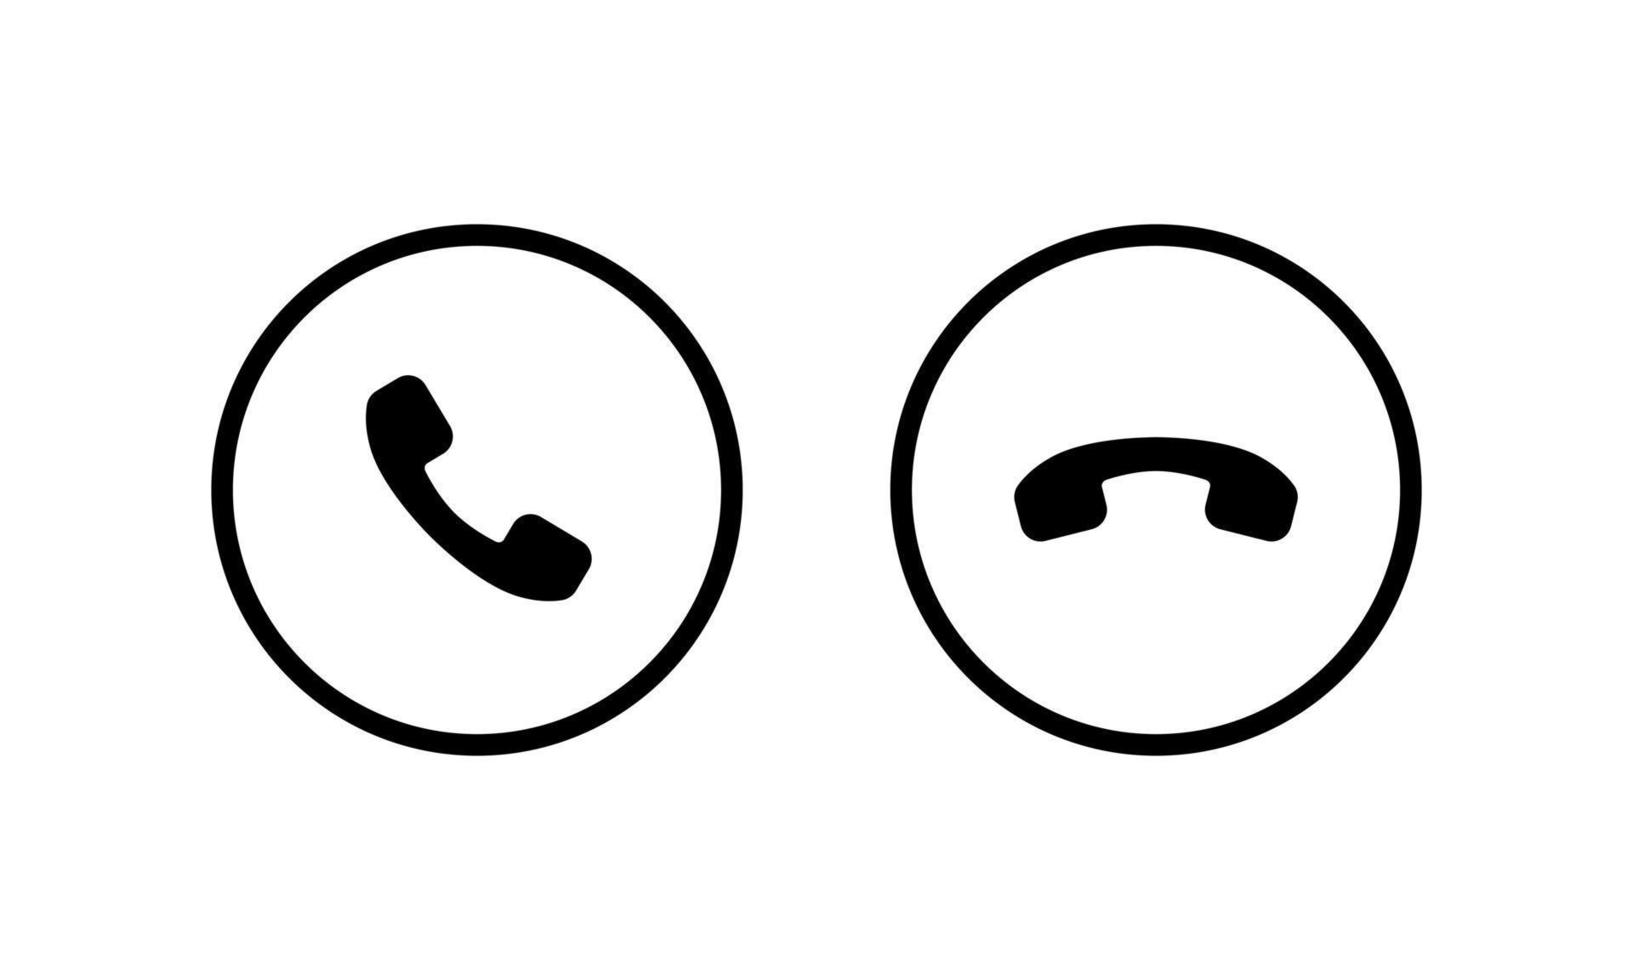 responder a la llamada y rechazar el icono del botón. aceptar y rechazar vector de símbolo